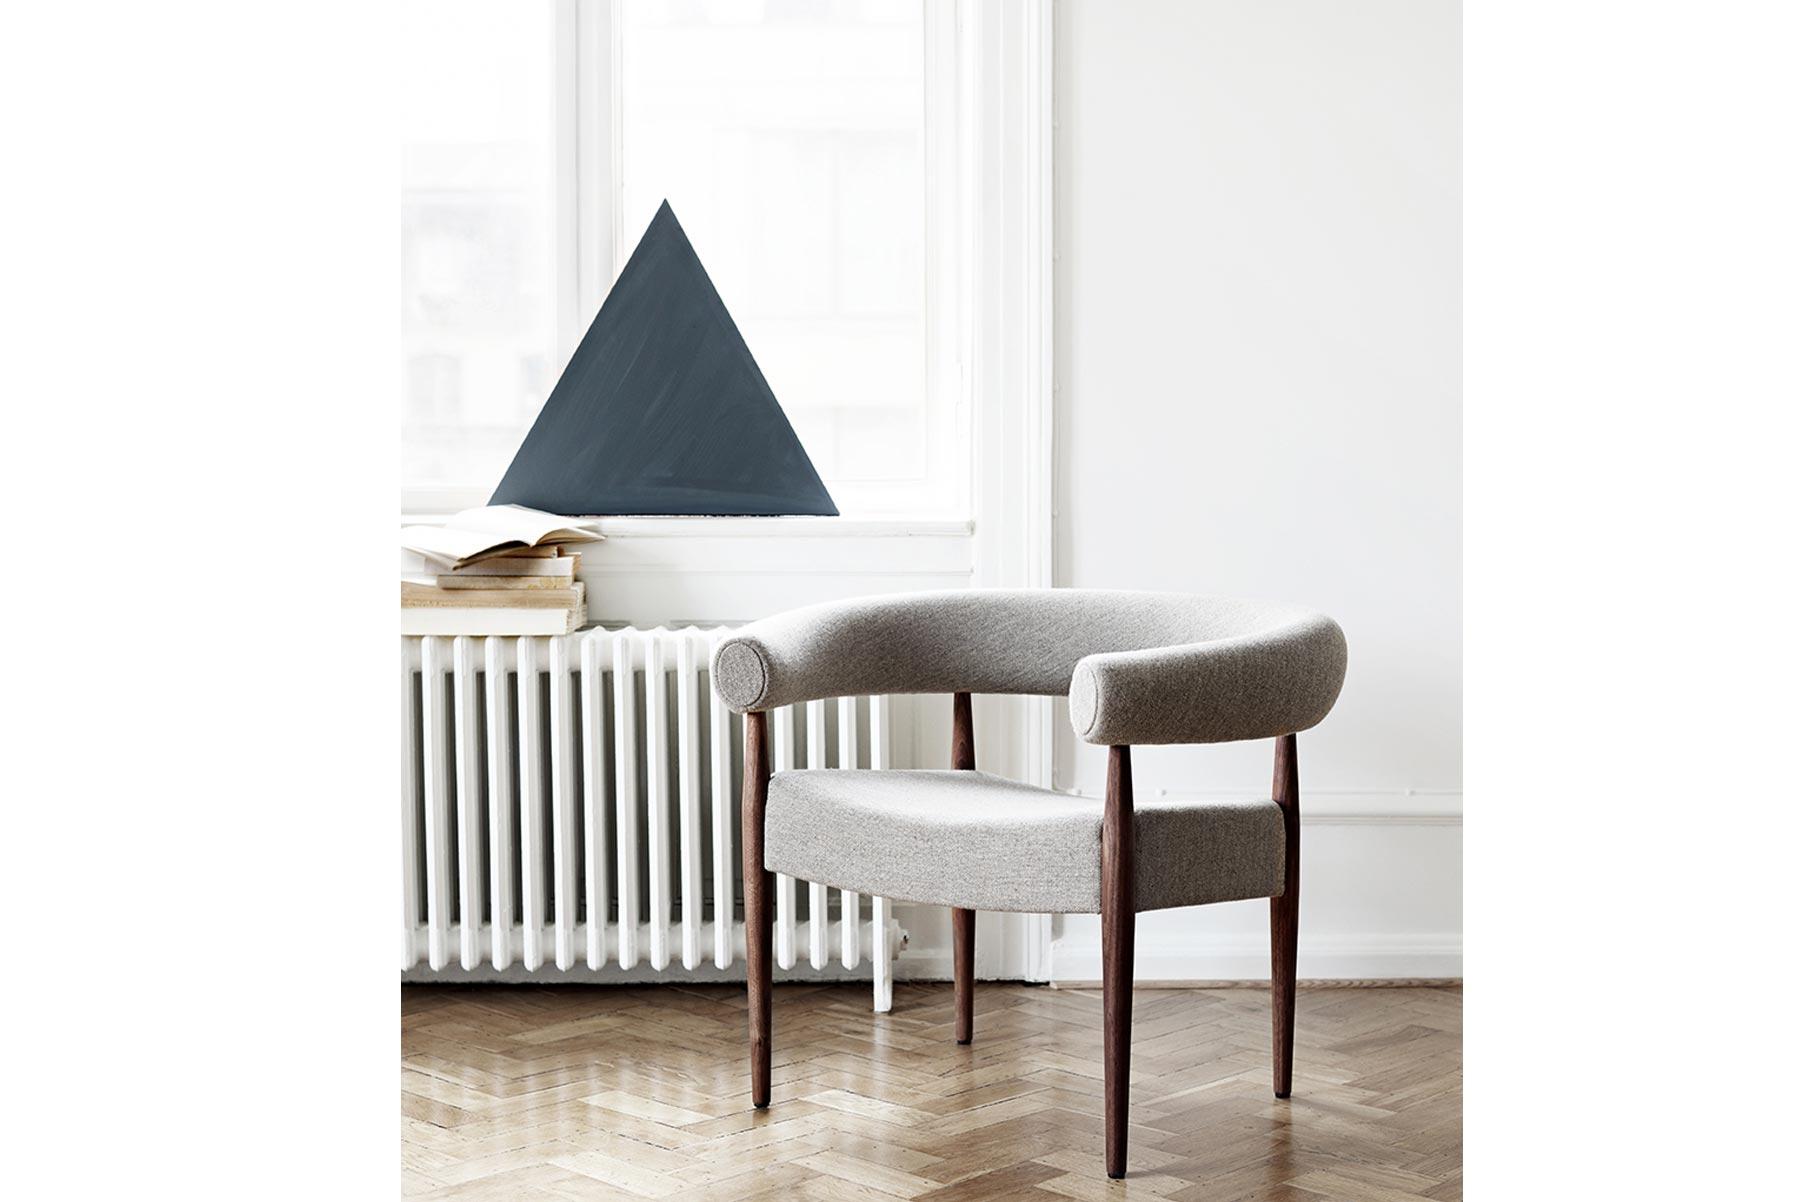 Conçue par Nanna et Jørgen Ditzel en 1958, la chaise Ring Chair est l'une des créations les plus élégantes et les plus emblématiques du couple. La chaise est fabriquée à la main dans l'usine de GETAMA à Gedsted, au Danemark, par des ébénistes